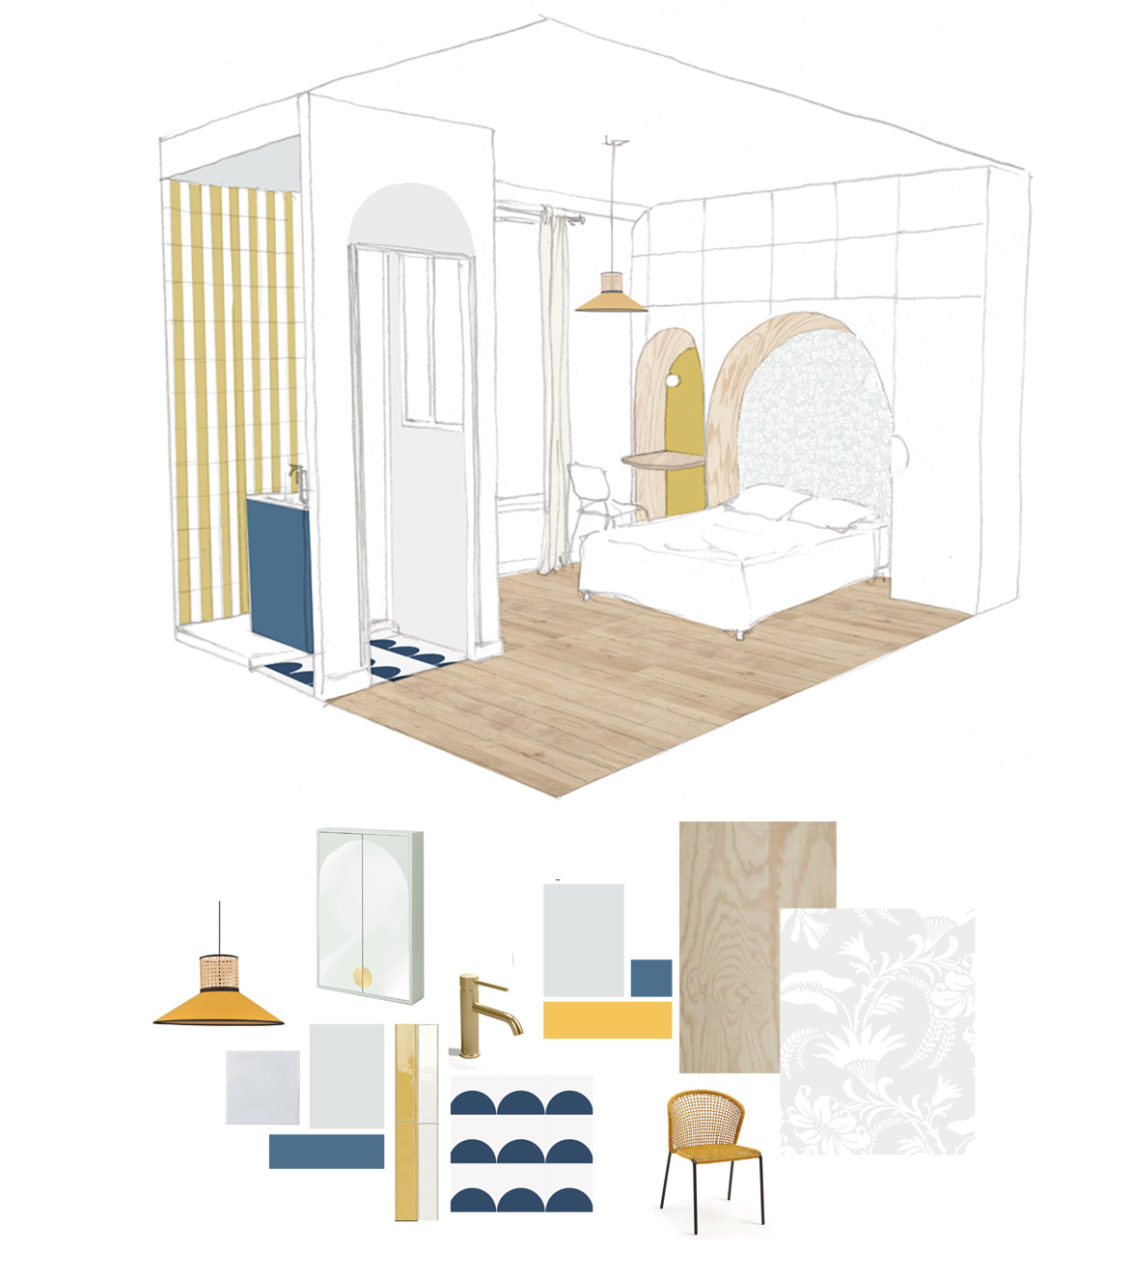 Vue en 3D d'une des chambres et sa salle de bain du projet en cours de co-living à Villejuif avec ses alcôves courbes pour le lit et le bureau ainsi que les propositions matériaux et mobiliers.